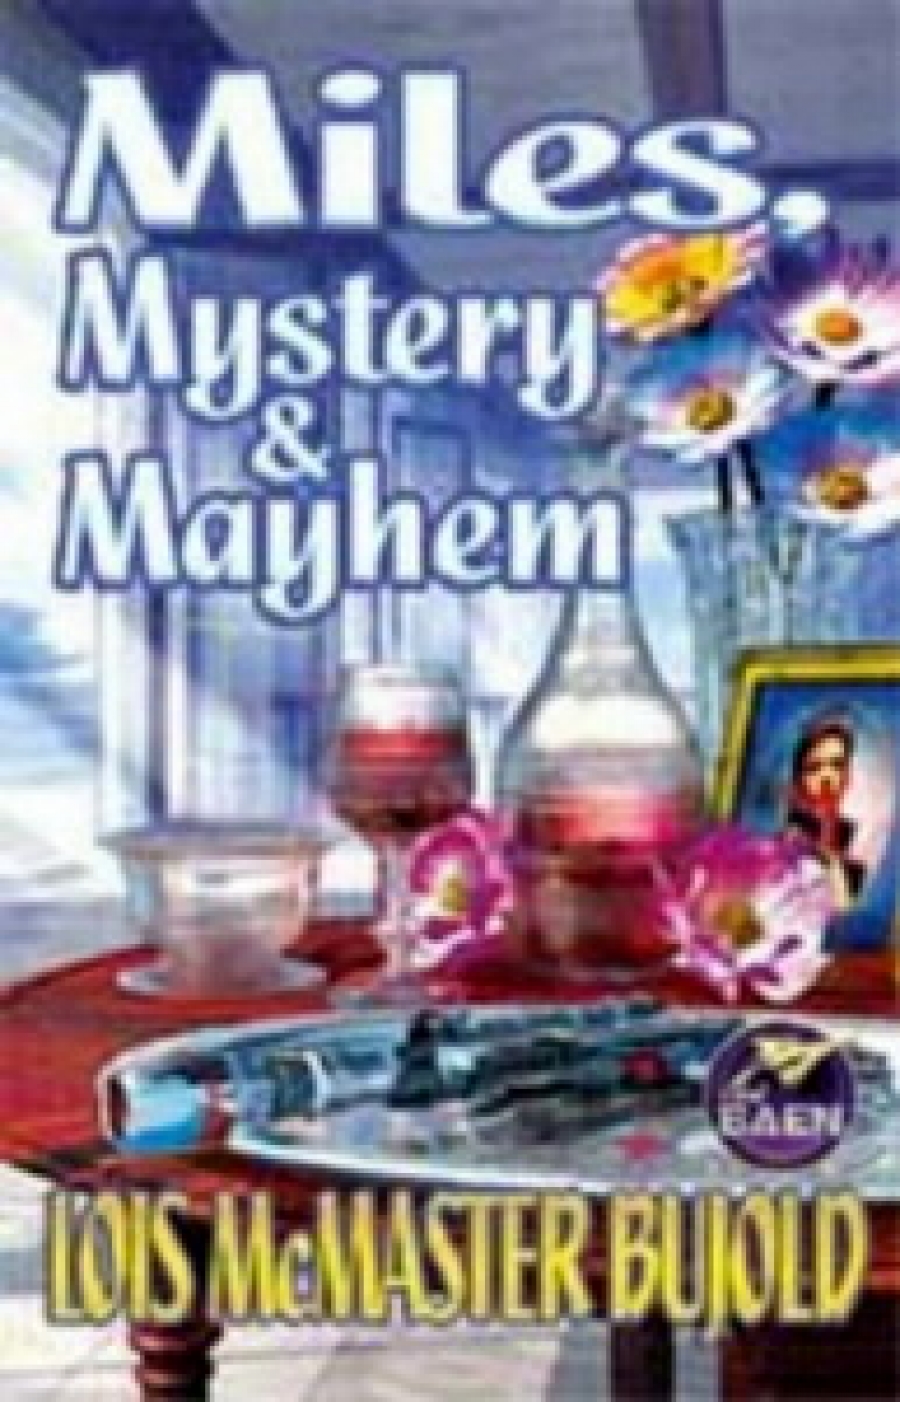 Lois M.B. Miles Mystery and Mayhem (Cetaganda, Ethan of Athos, Labyrinth) 